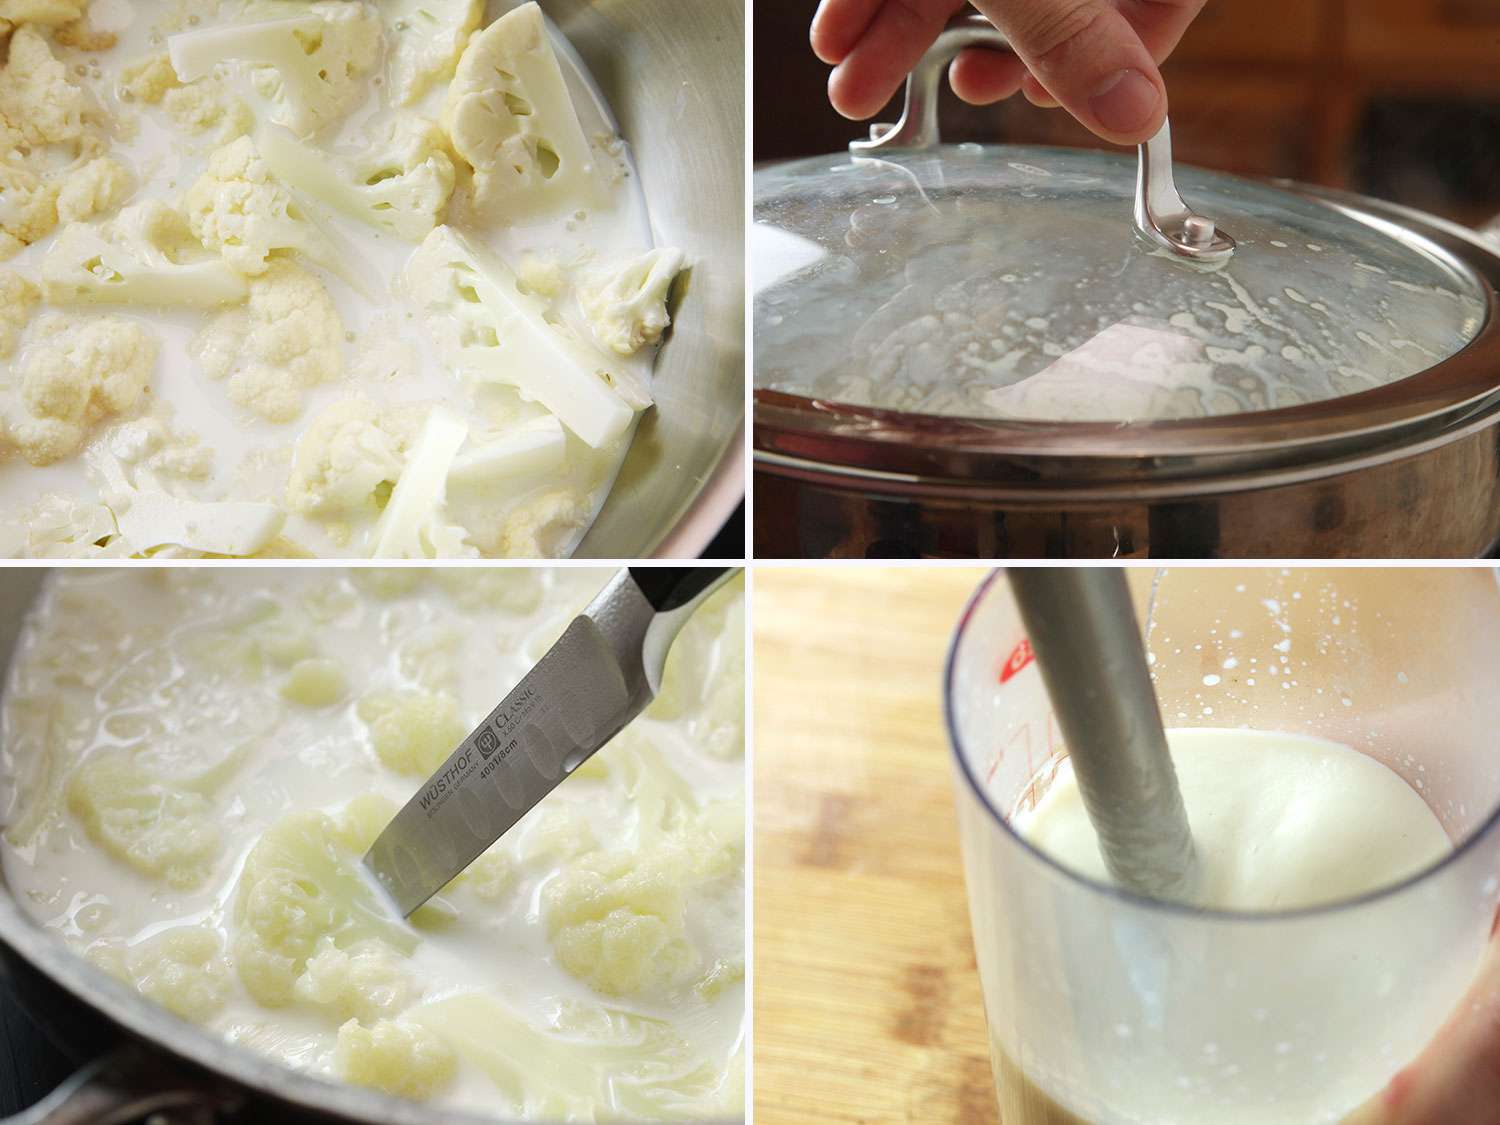 照片拼贴:第一张是用纯素牛奶蒸花椰菜。第二种是用手打开一个凝结的有盖子的罐子。第三步是用刀检查蒸好的菜花是否熟透。第四种方法是使用浸入式搅拌机将花椰菜捣成泥。